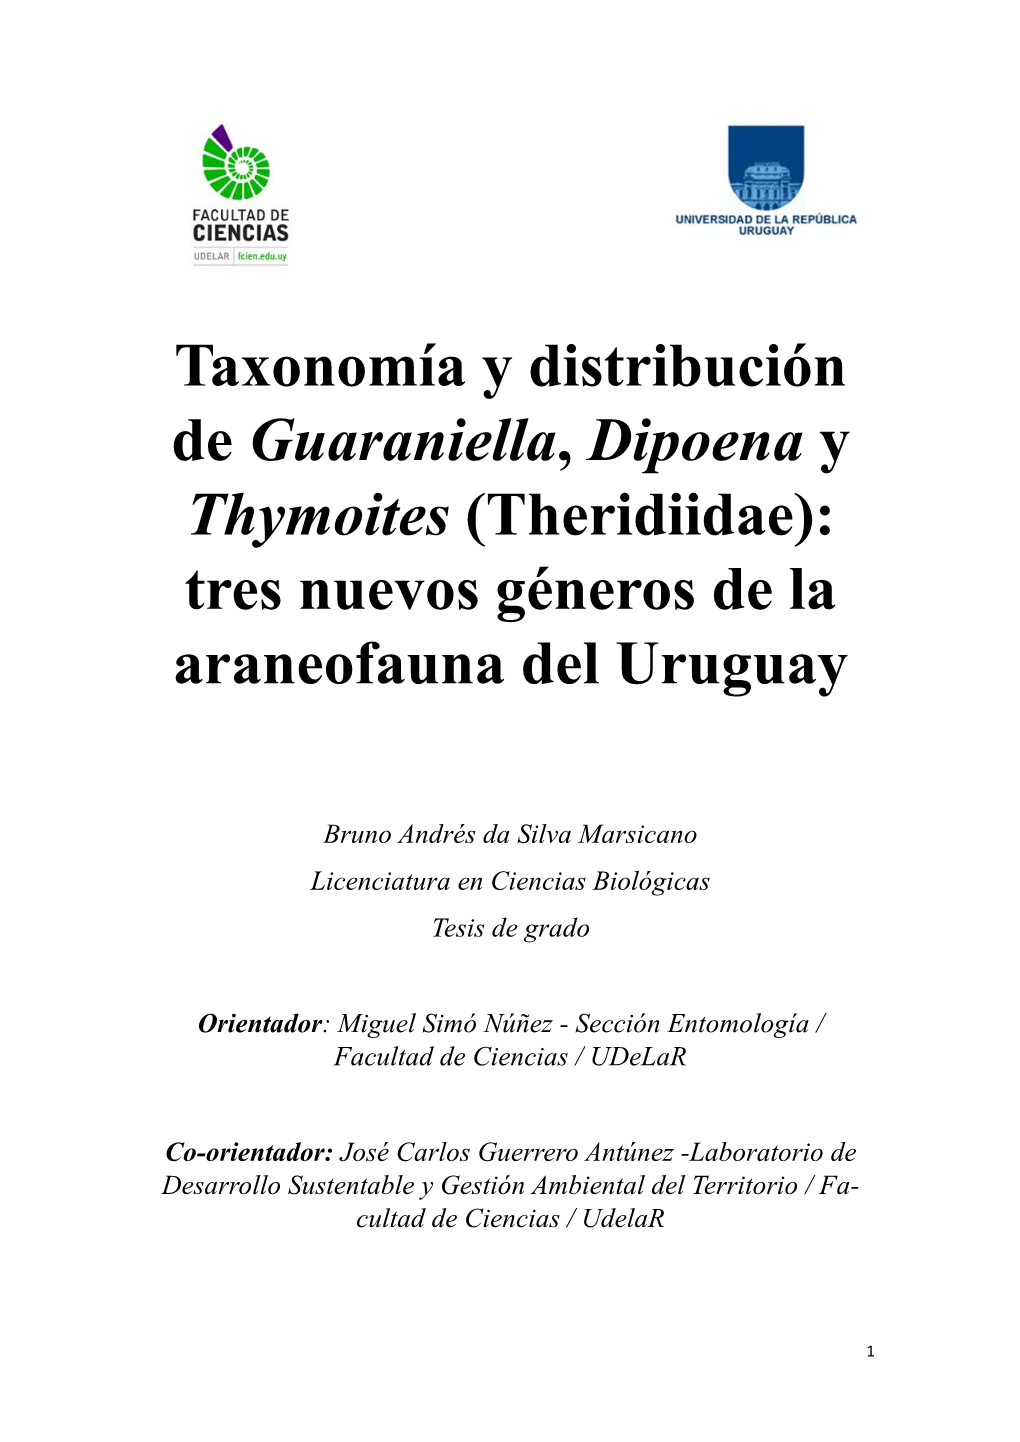 Taxonomía Y Distribución De Guaraniella, Dipoena Y Thymoites (Theridiidae): Tres Nuevos Géneros De La Araneofauna Del Uruguay